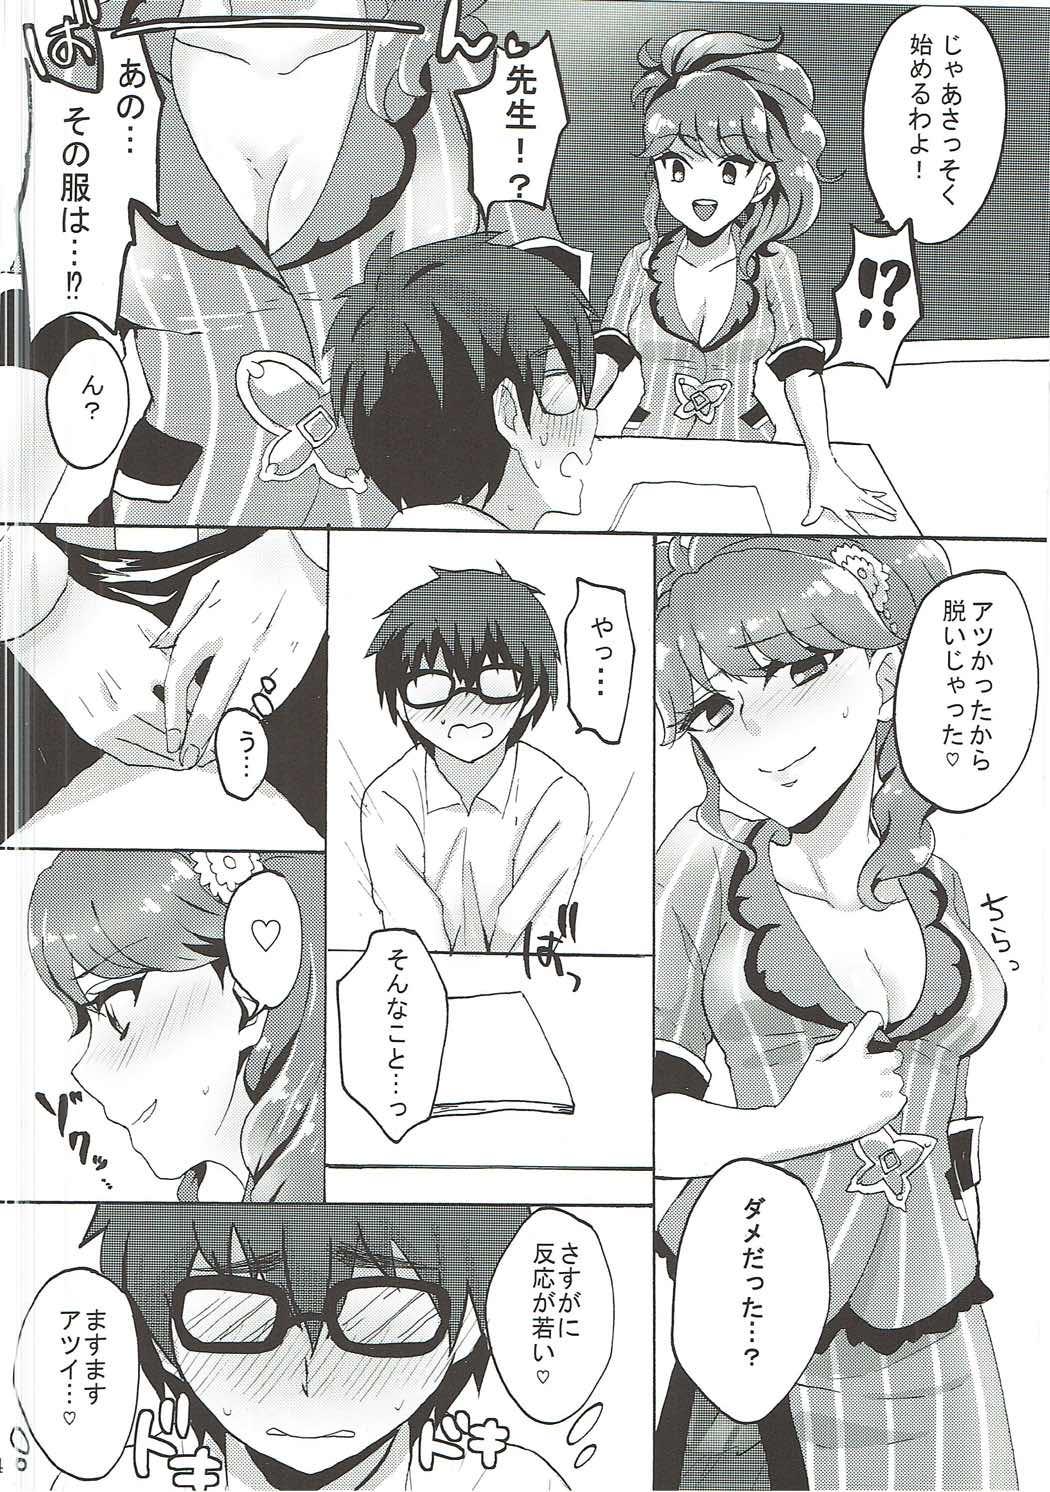 Girls Oshiete! Aikatsu Sensei - Aikatsu Heels - Page 5